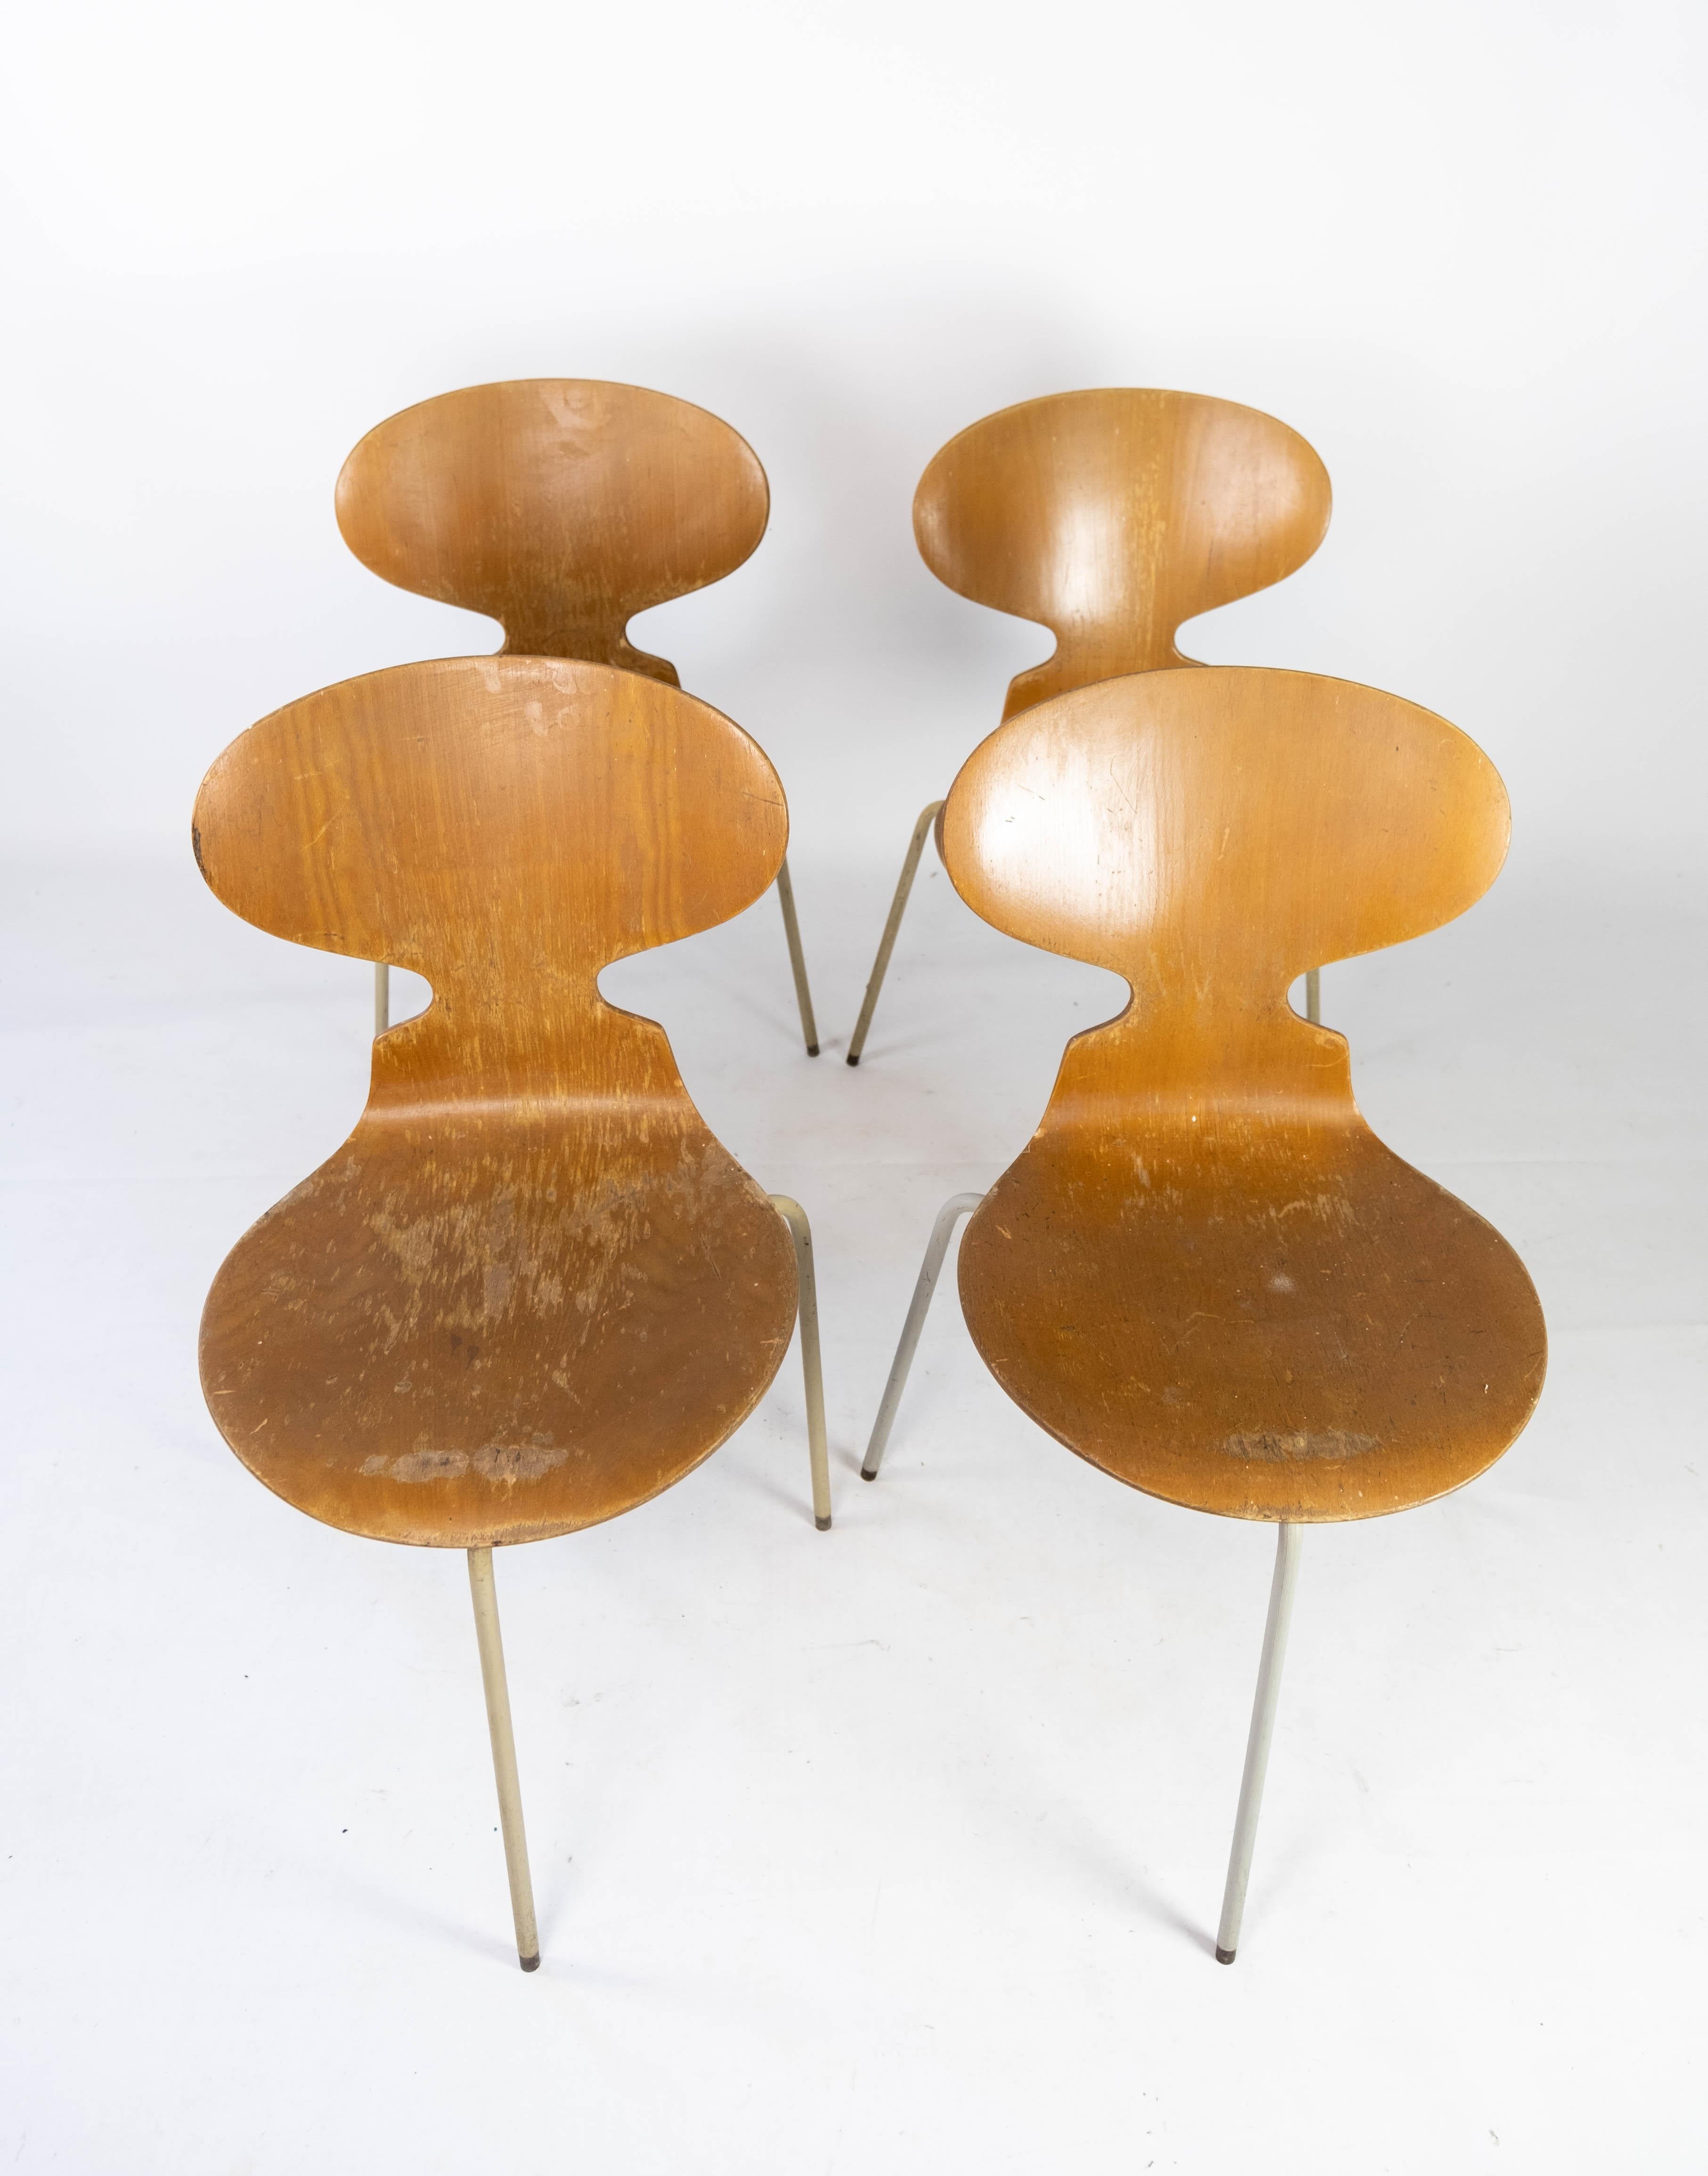 Cet ensemble de quatre chaises Icone, modèle 3101, incarne l'éthique du design emblématique de l'architecte et designer danois Arne Jacobsen. Créées en 1952, ces chaises représentent la quintessence du modernisme scandinave, caractérisé par leurs